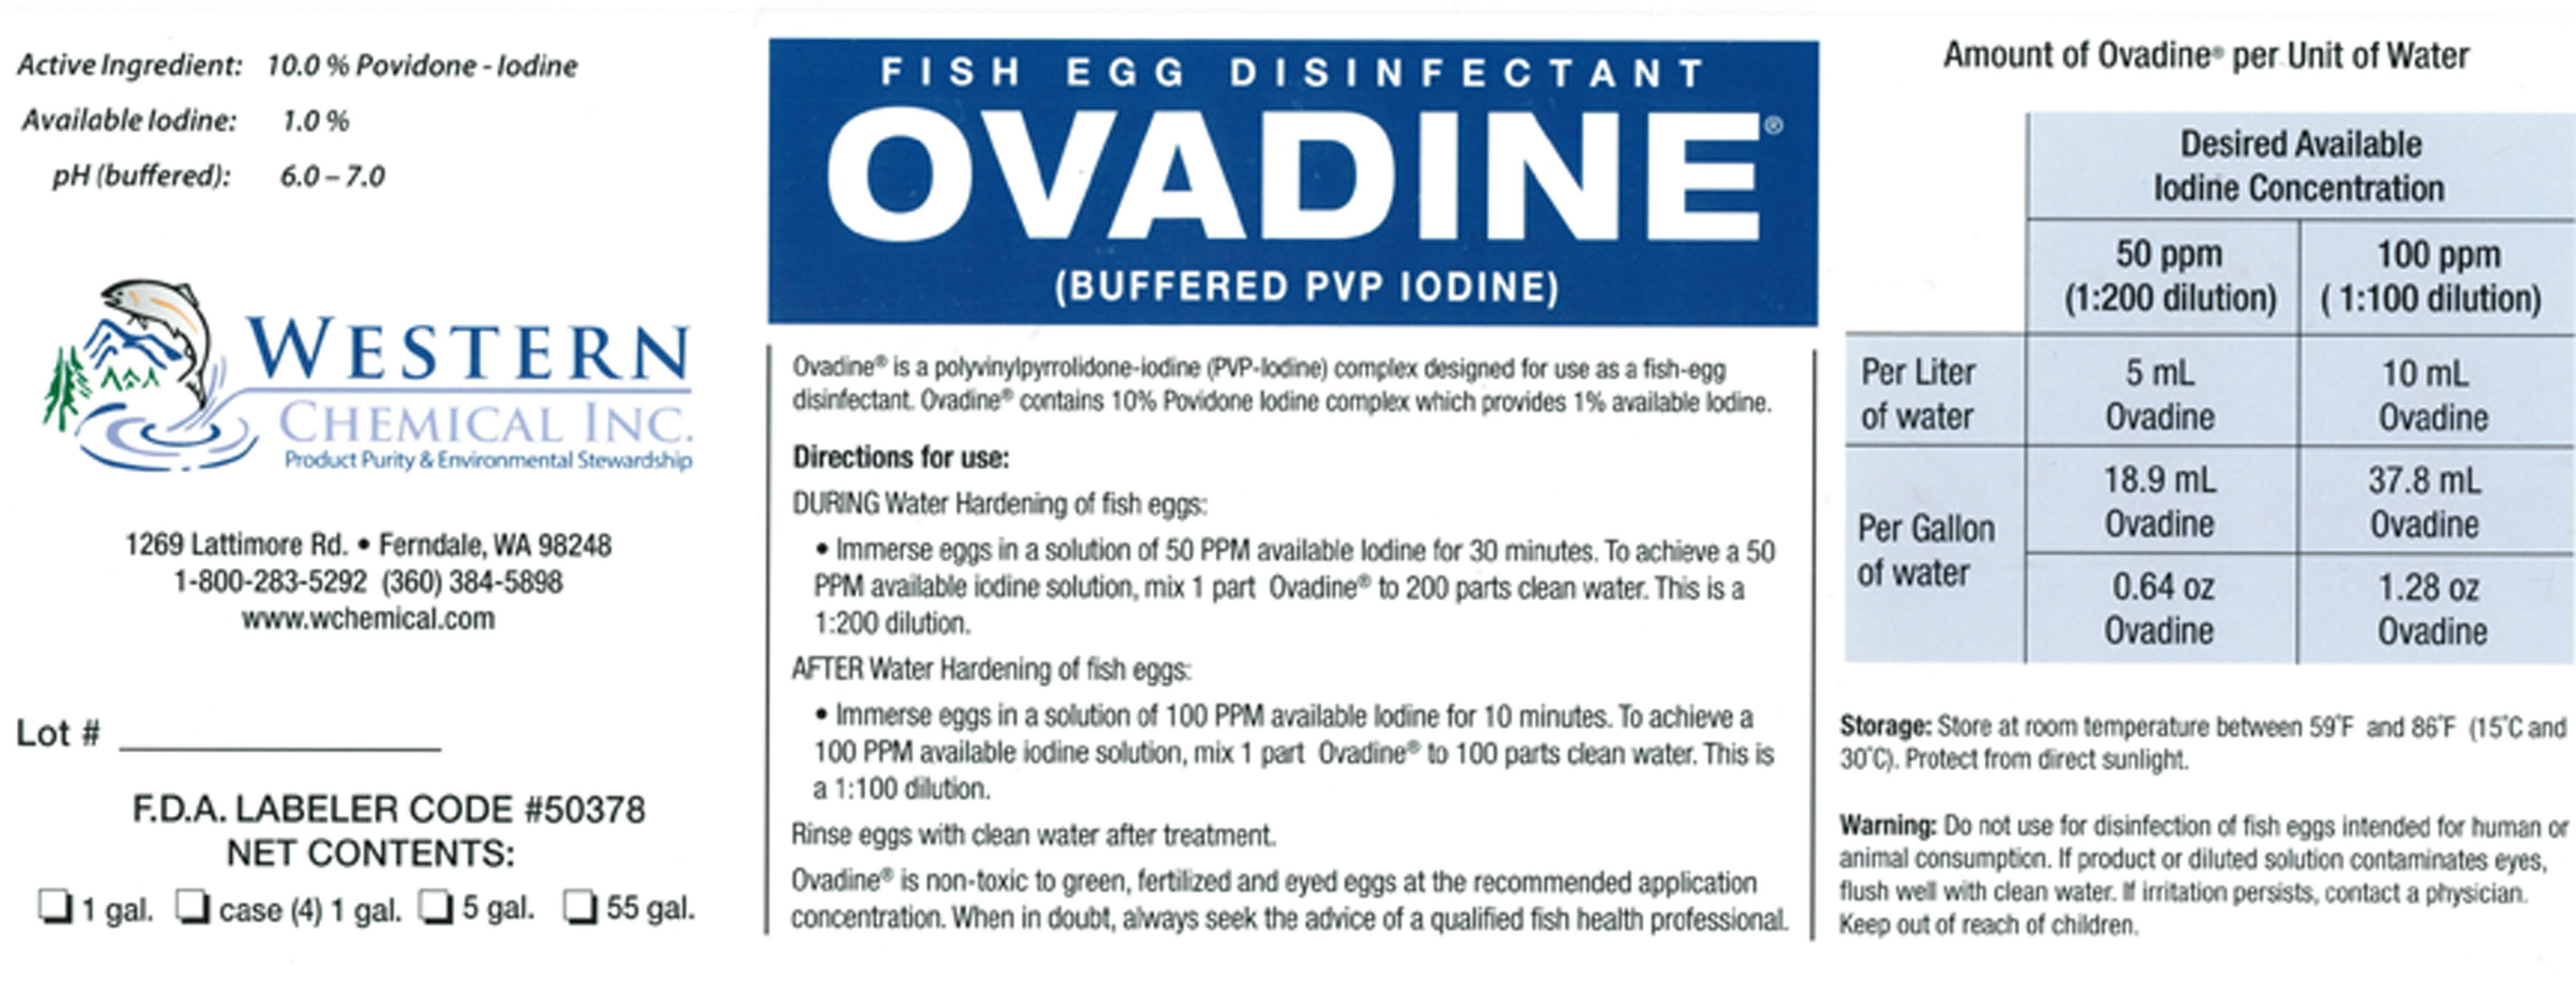 image of Ovadine label